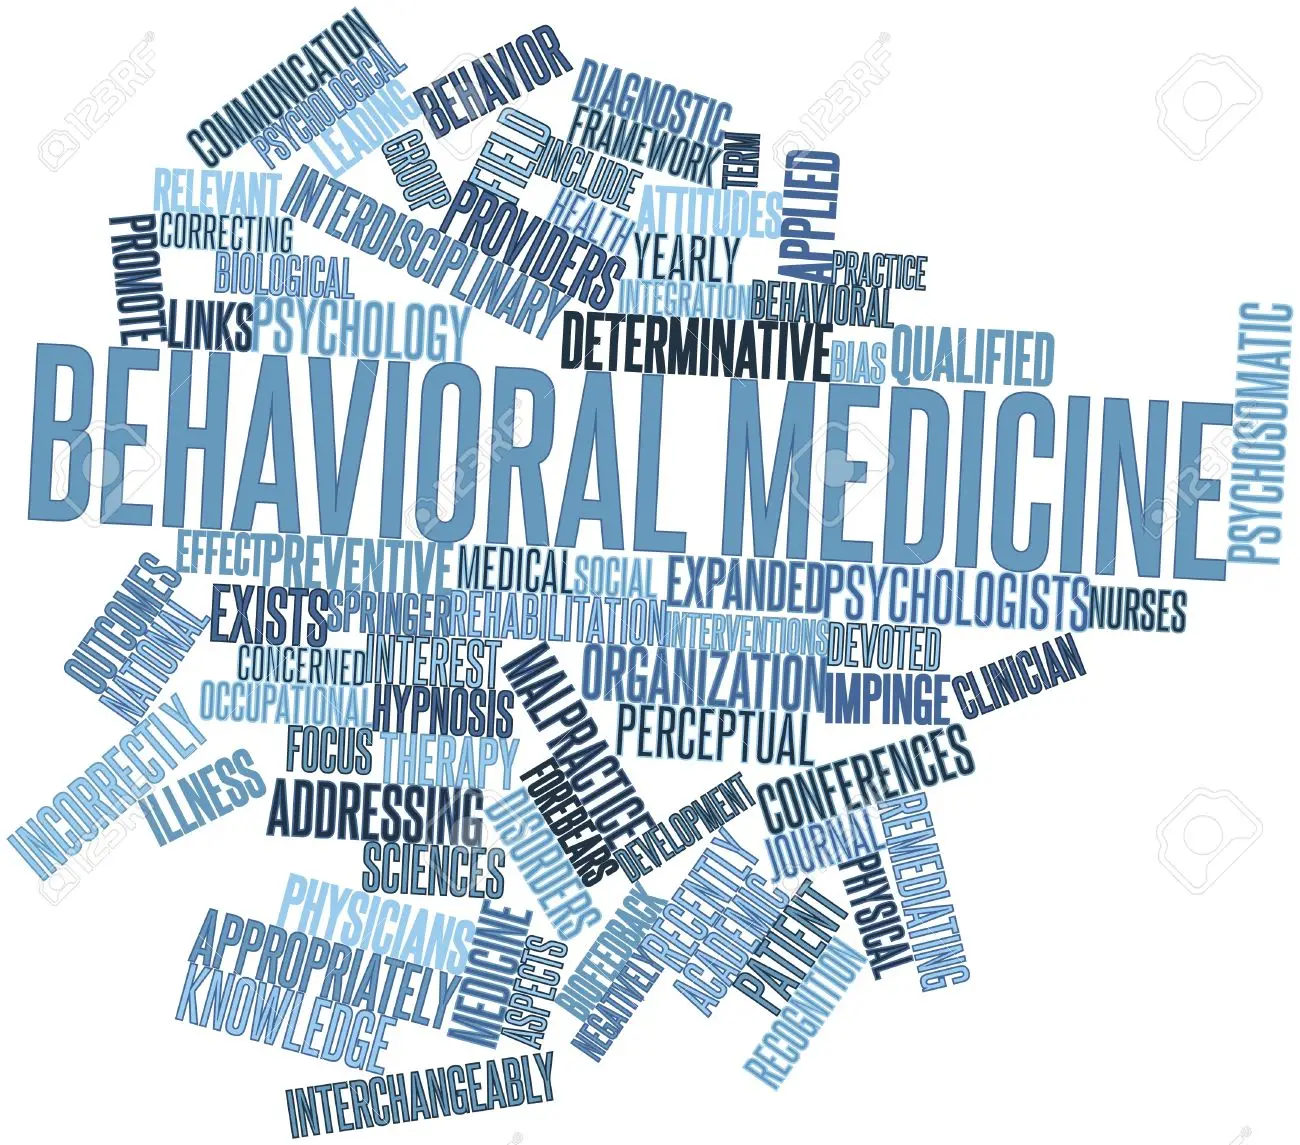 phd in behavioral medicine